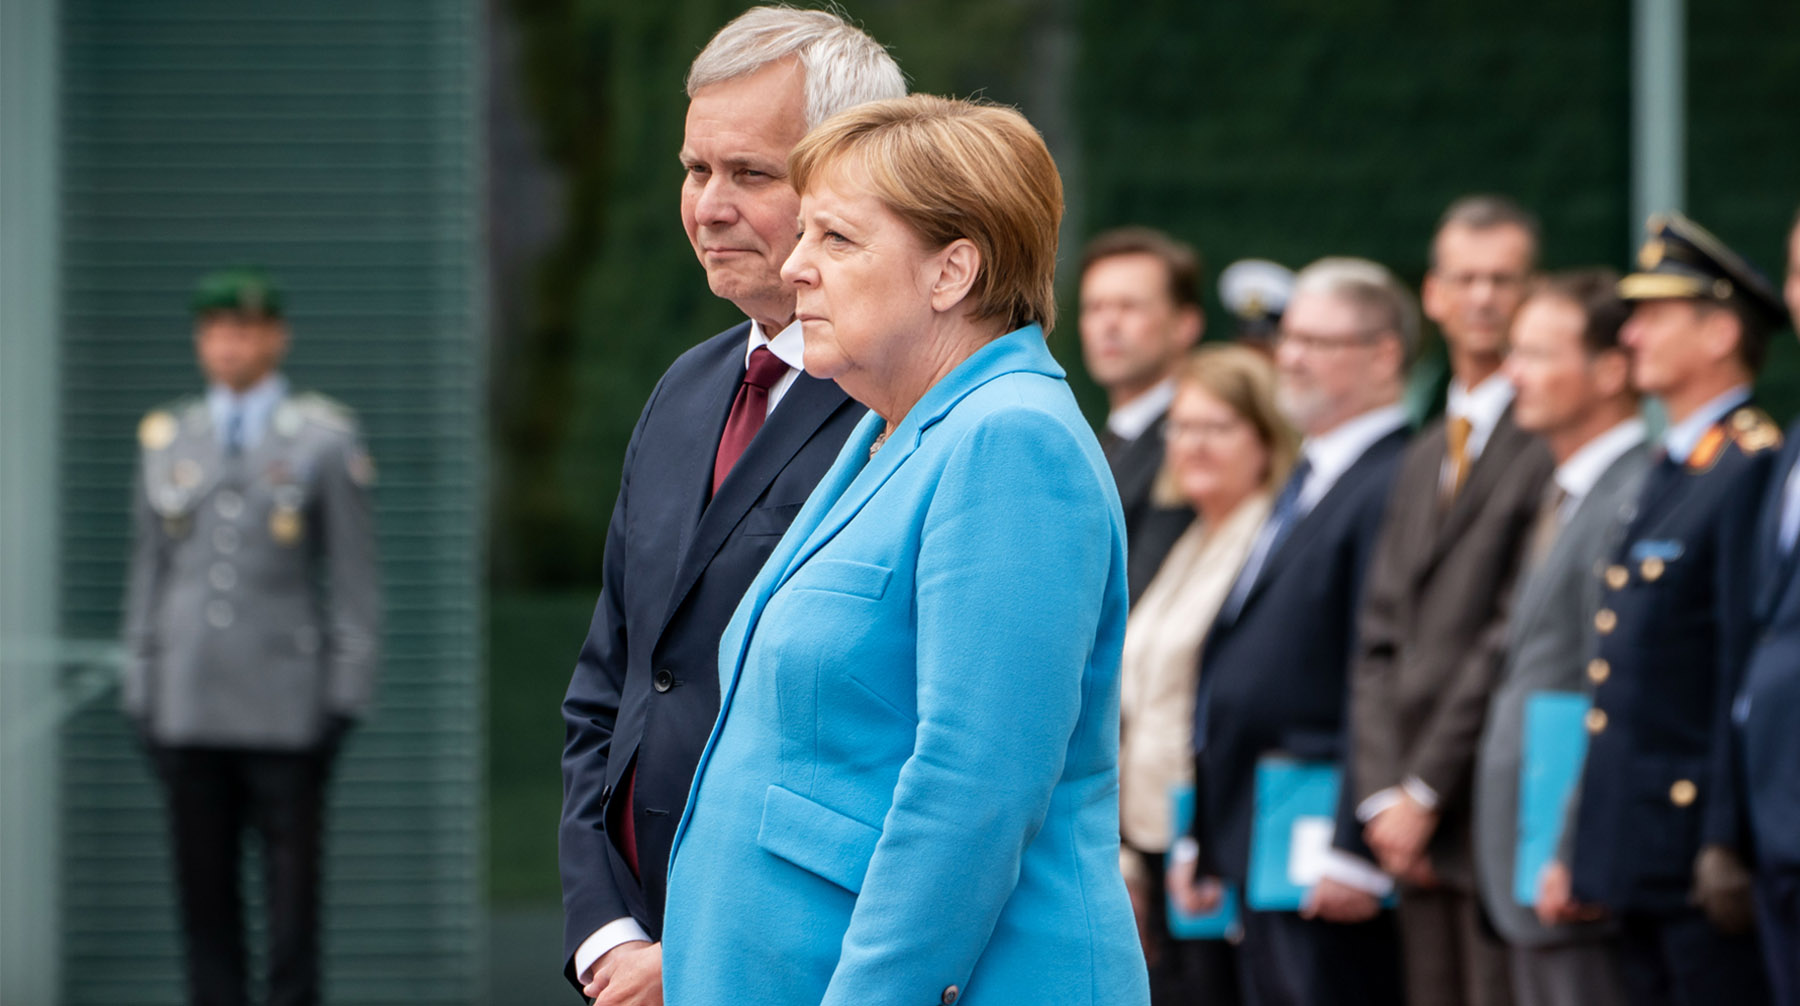 На этот раз приступ дрожи охватил немецкого канцлера во время встречи с финским премьер-министром Ангела Меркель и Антти Ринне